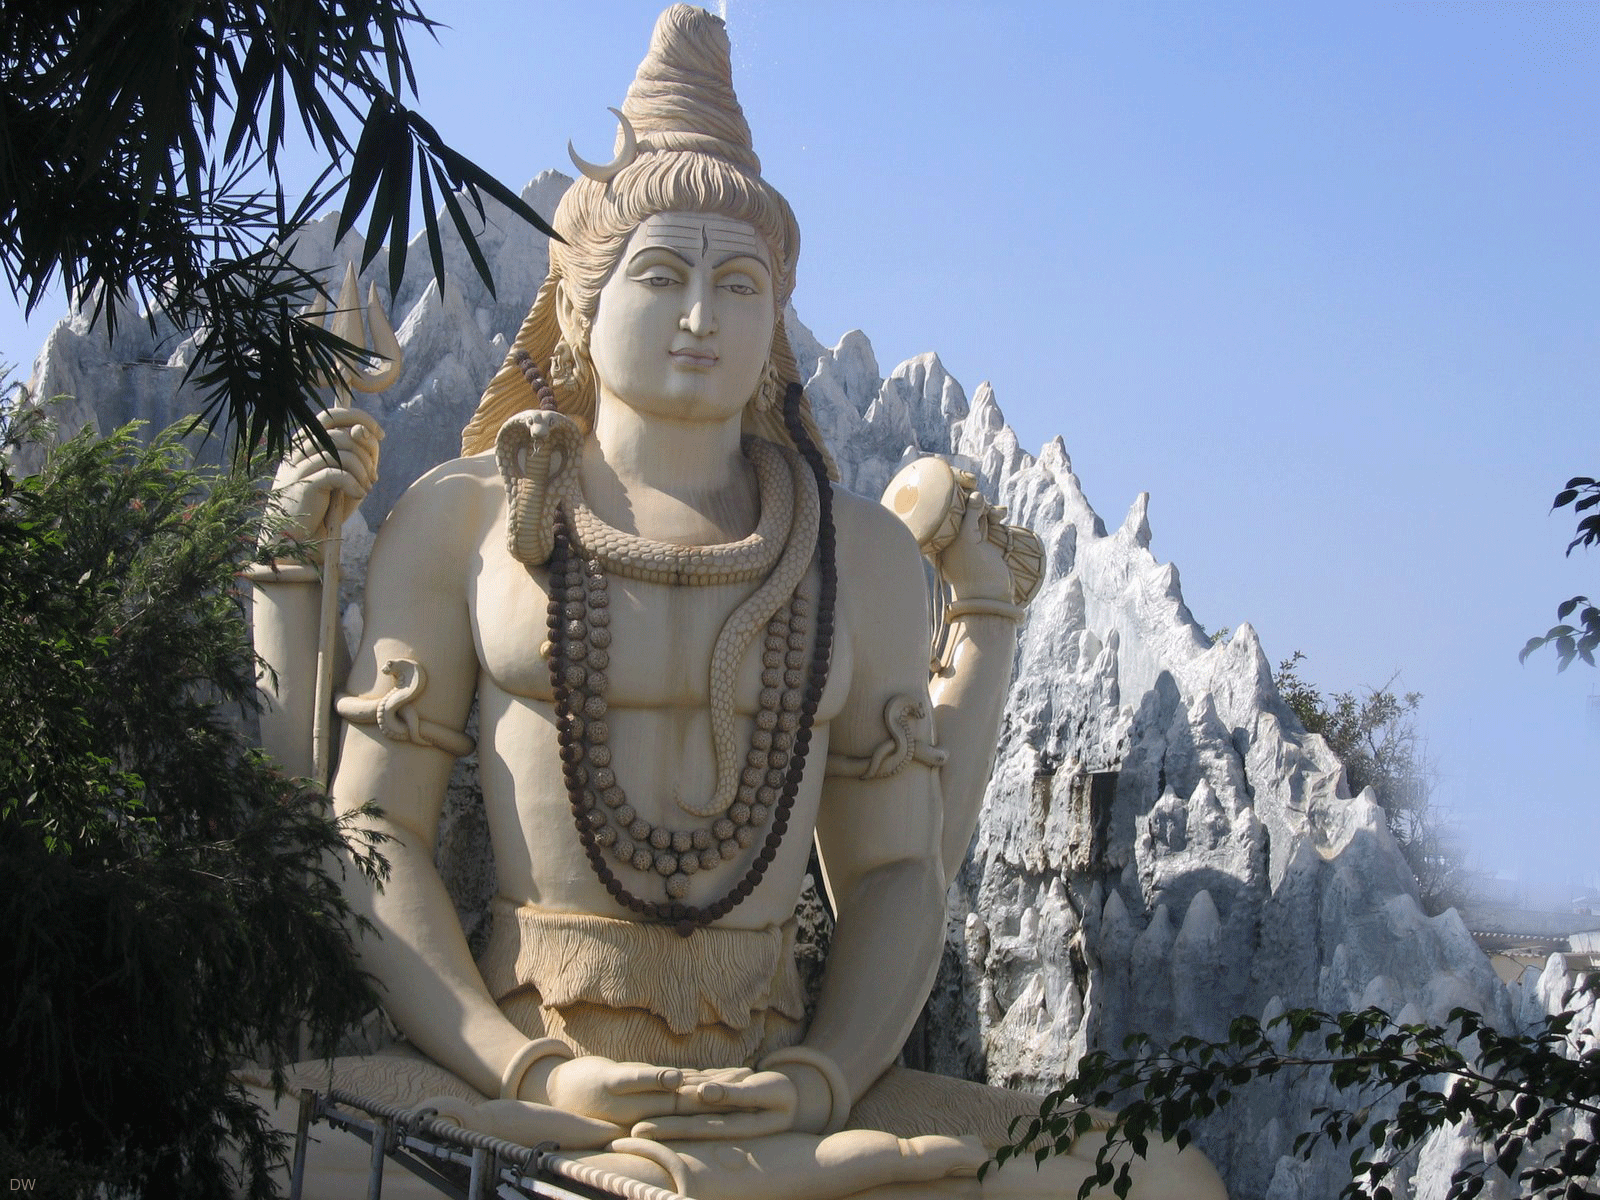 Indian God Shiva